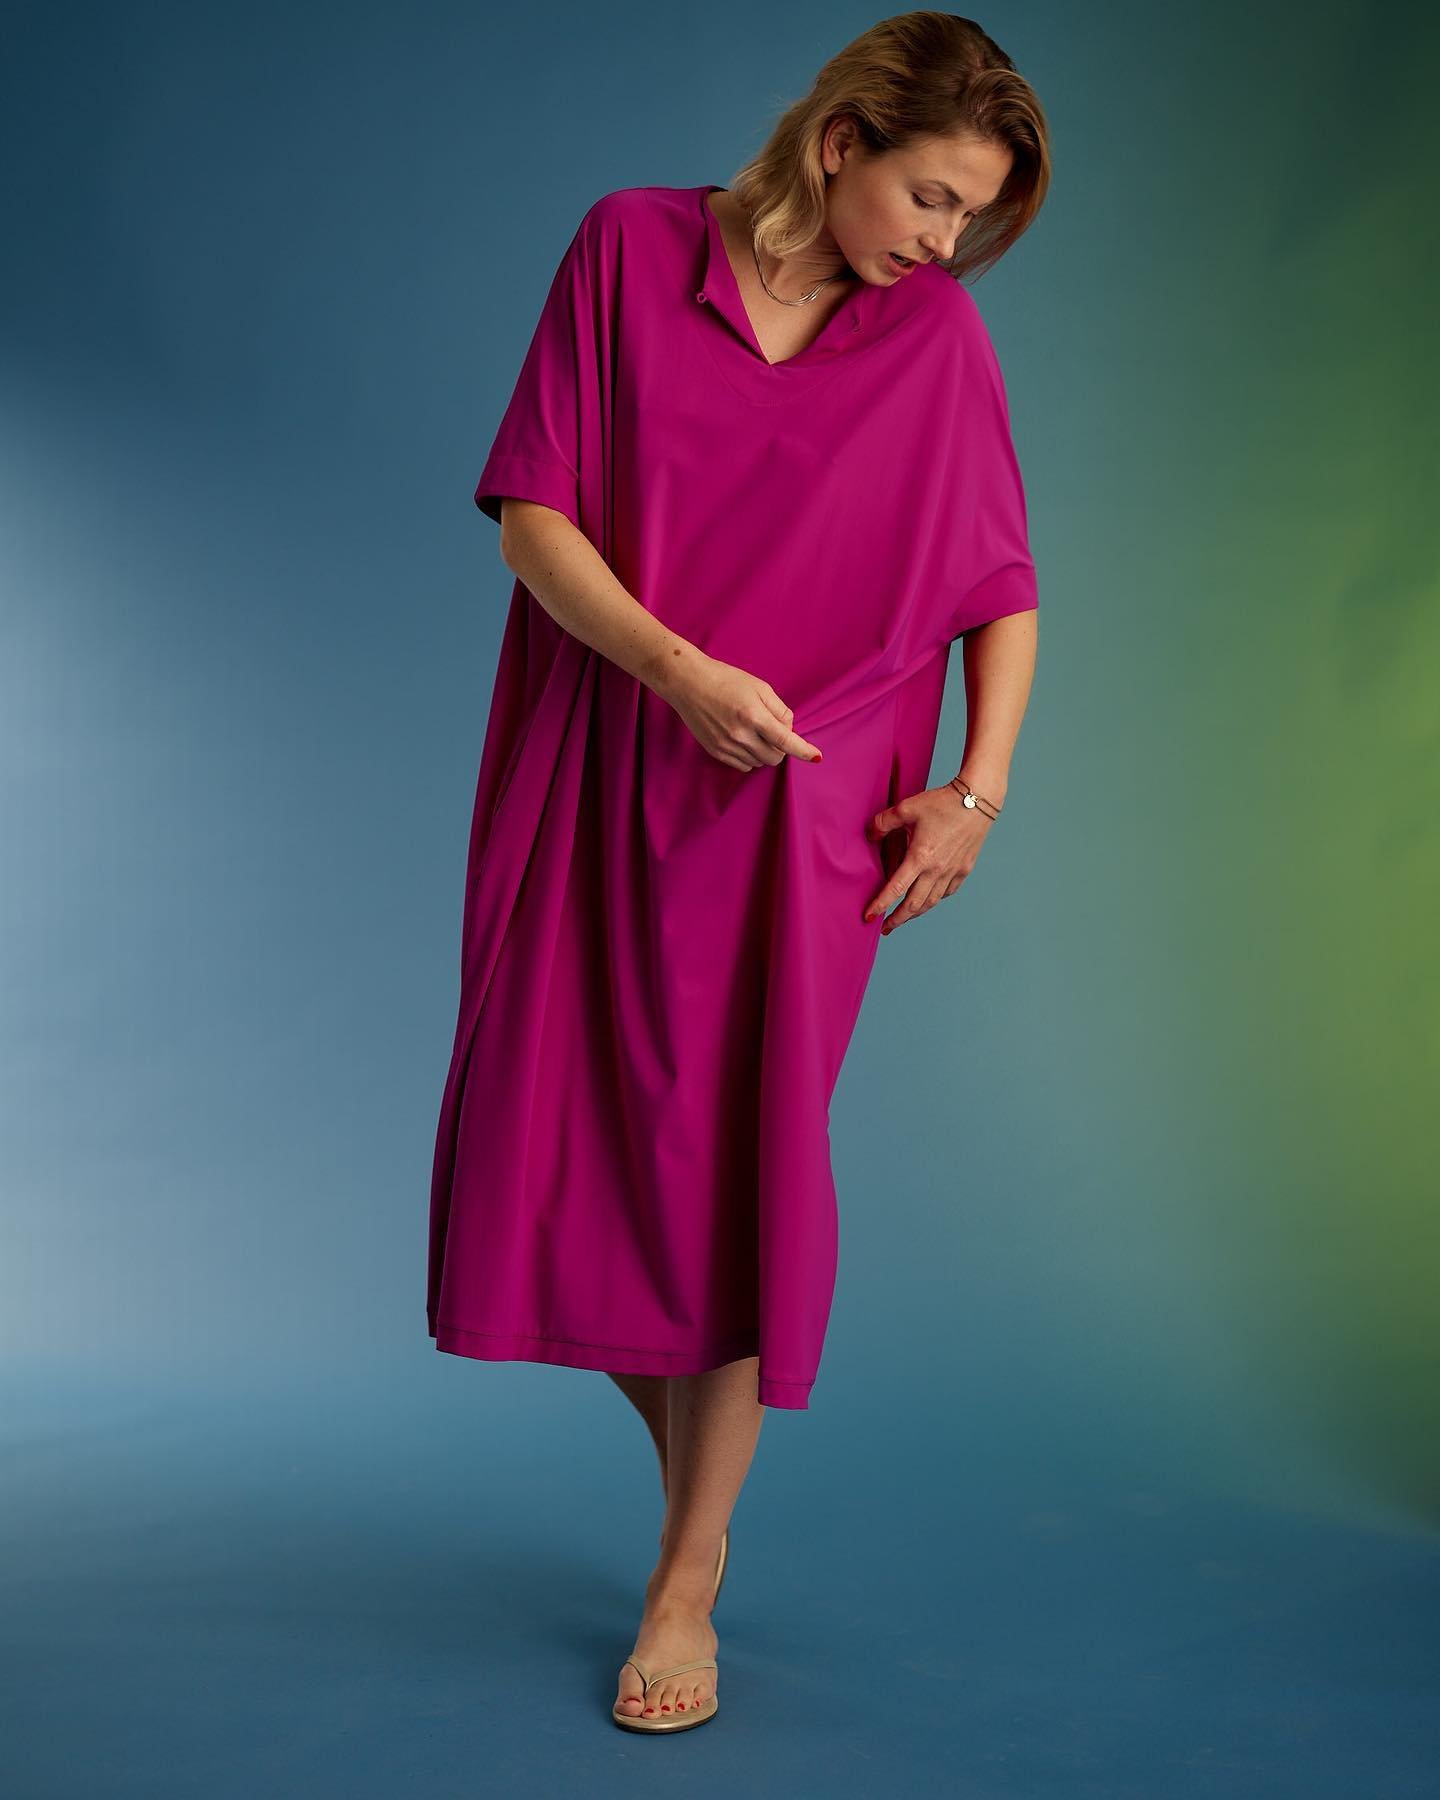 Kleid ANNABEL LANG in magenta. Jetzt online und in unseren Stores in Hamburg.

Hochwertiger Stretch hergestellt in Italien 
&Ouml;ko-tex Standard  100 Label zertifiziert
&gt; atmungsaktiv 
&gt; pflegeleicht 
&gt; easy for traveling 

Foto @felixberna